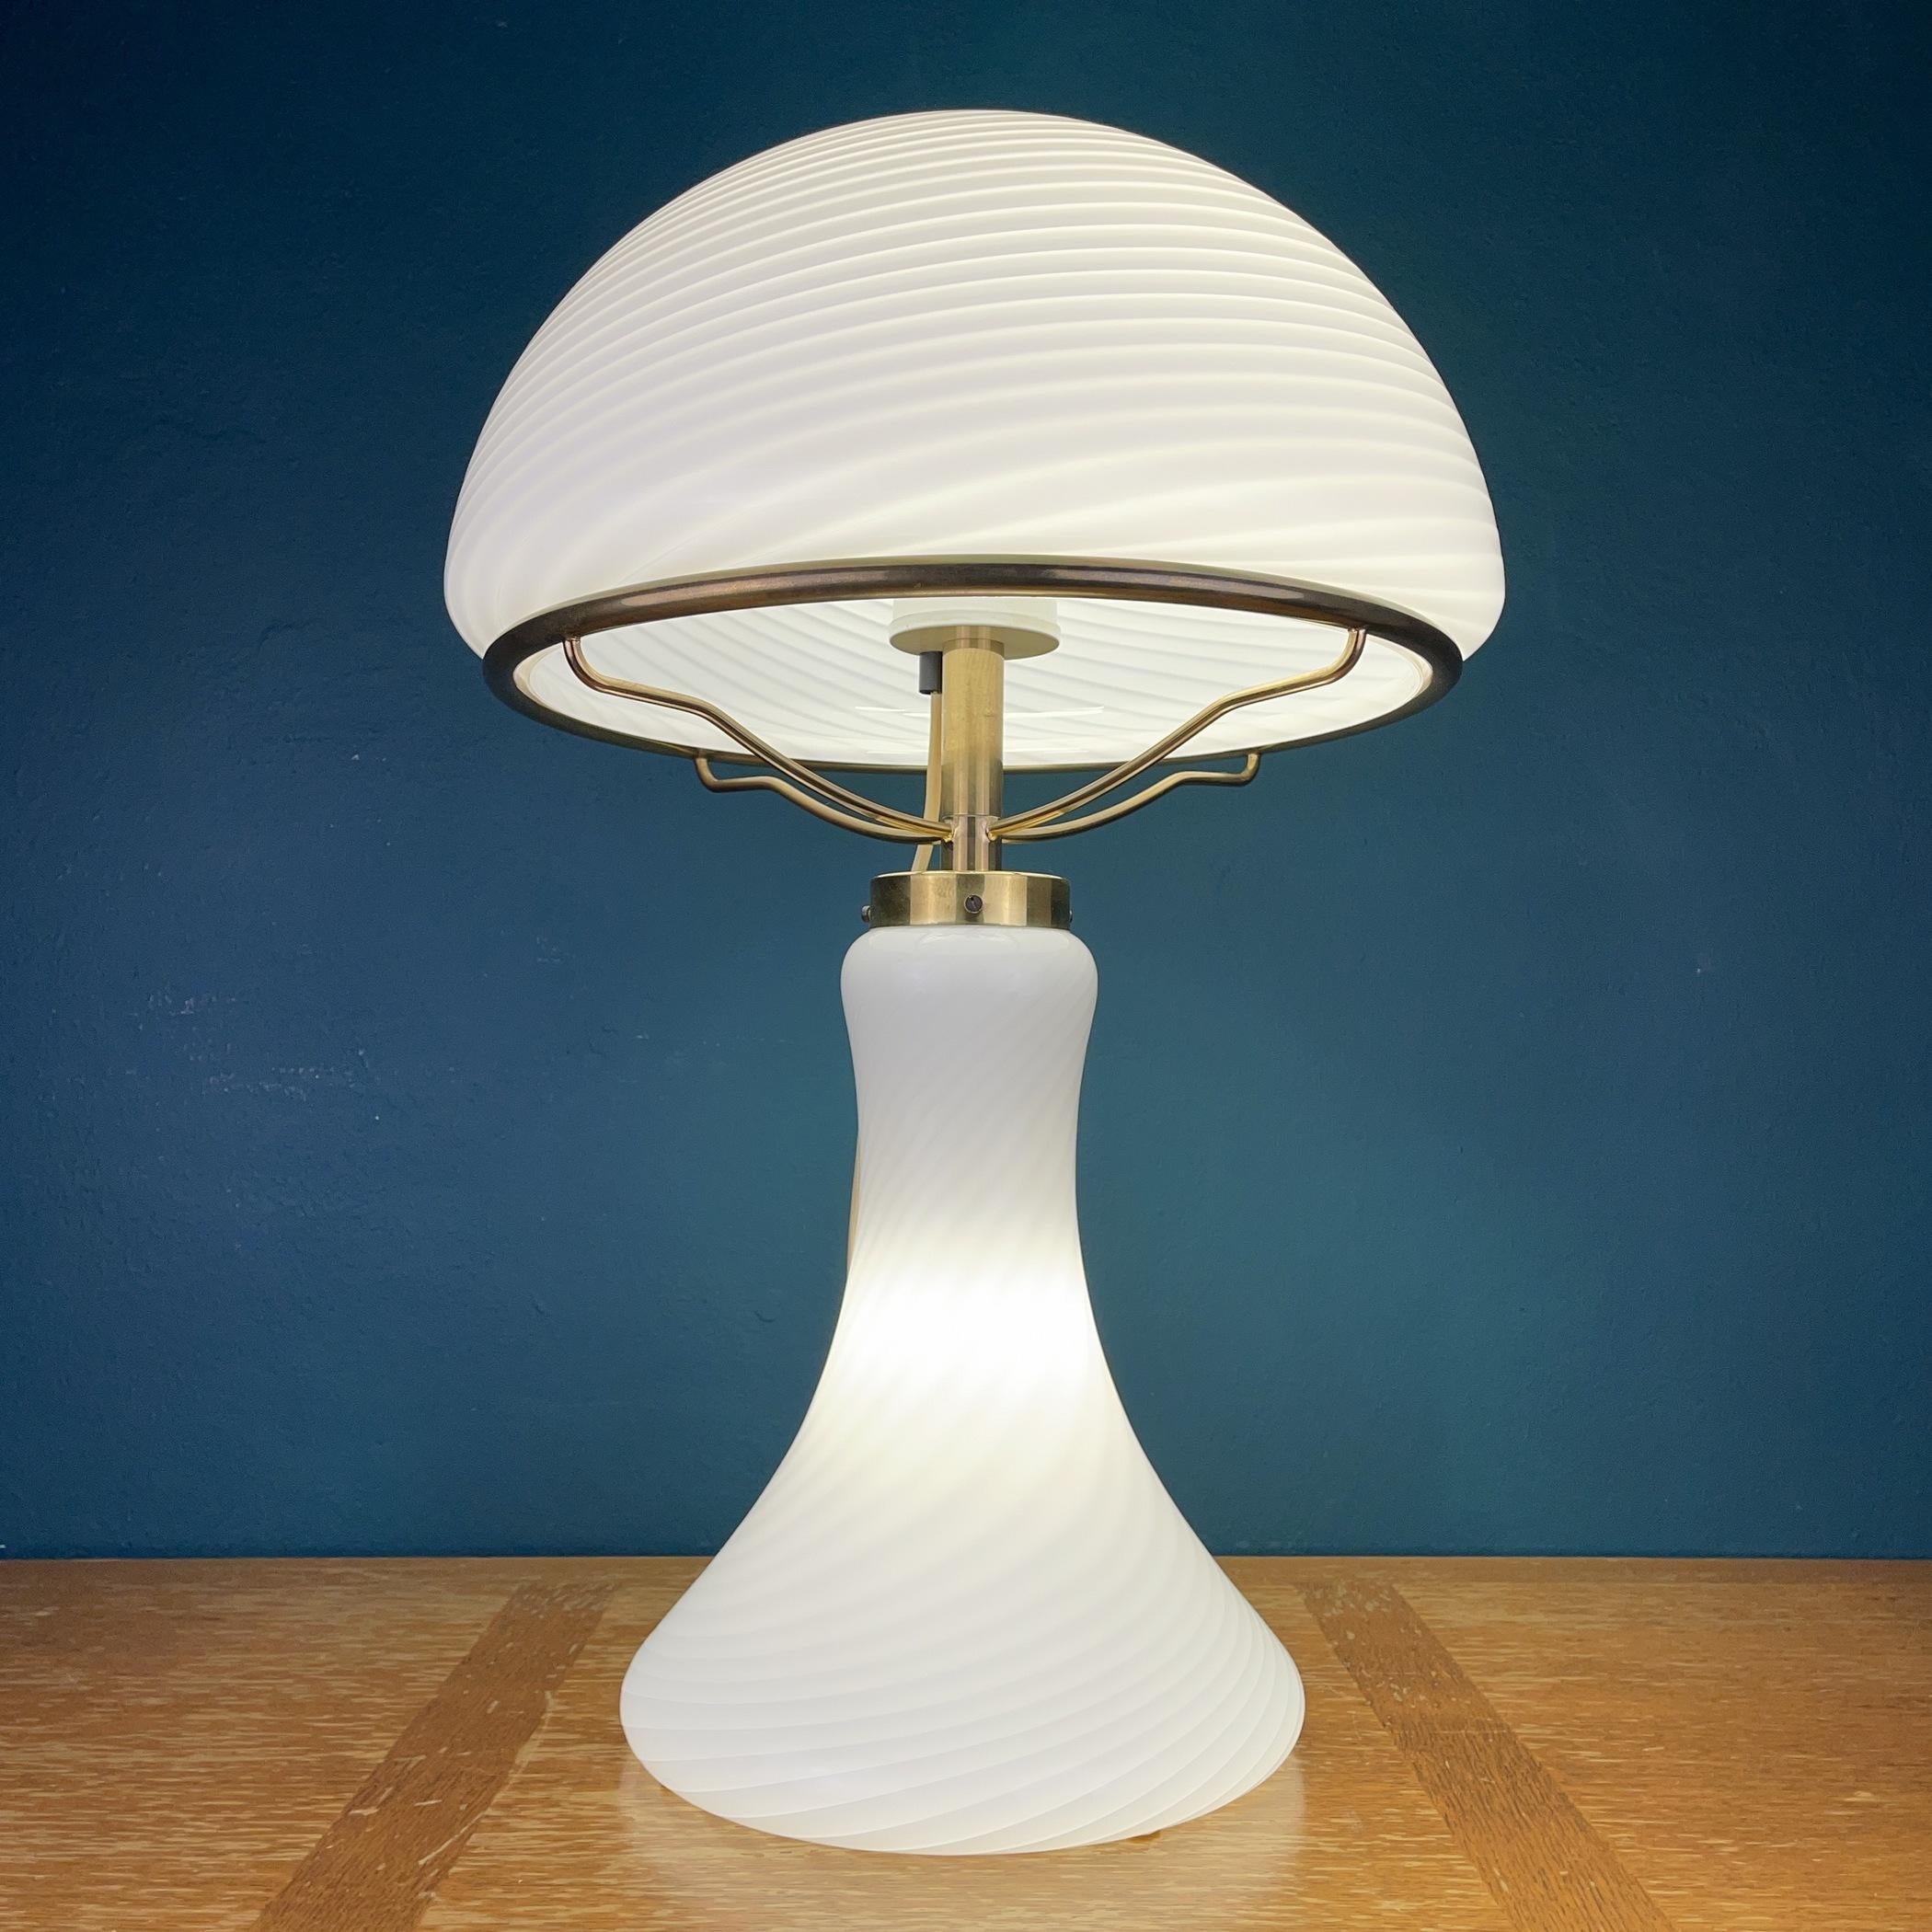 Riesige prächtige Muranoglas-Tischlampe Mushroom, hergestellt in Italien in den 1970er Jahren. Die Schönheit des klassischen Wirbelglases macht diese Lampe zu einem wahren Genuss. Sie hat drei Glühbirnen oben und eine Glühbirne im Sockel. Obere und